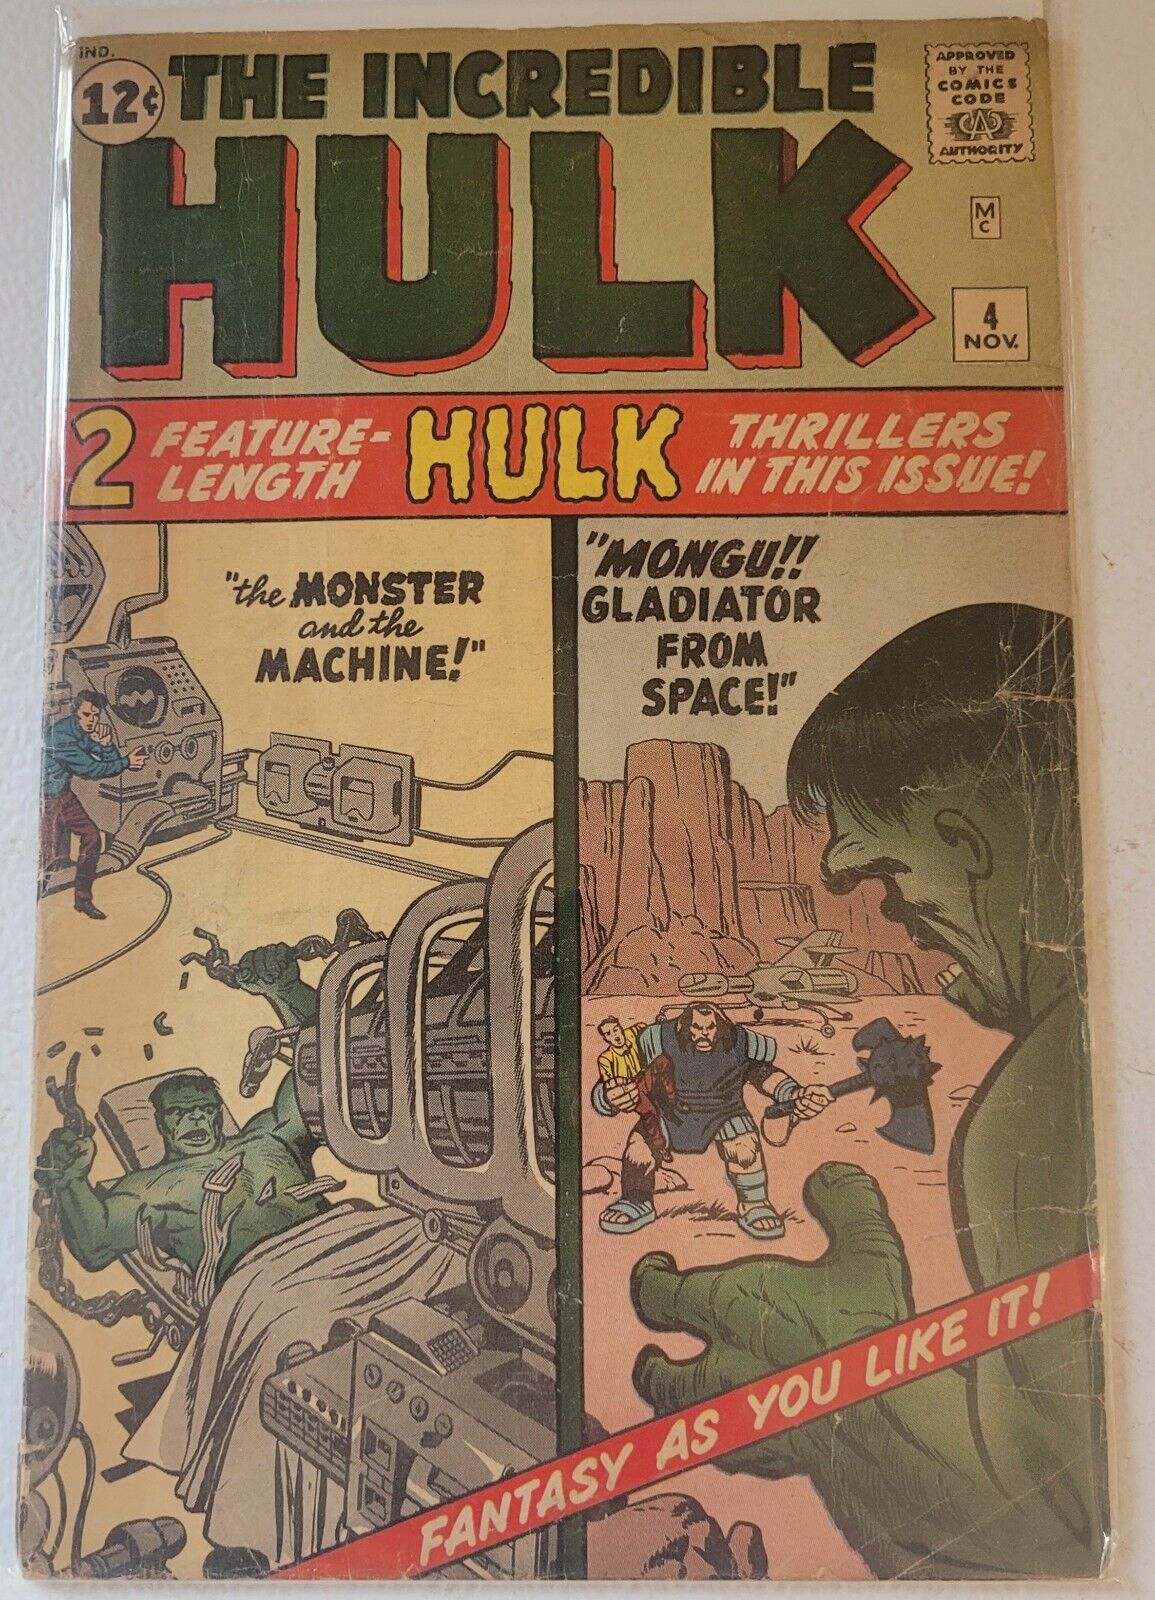 Incredible Hulk #4 1962 Origin Of The Hulk